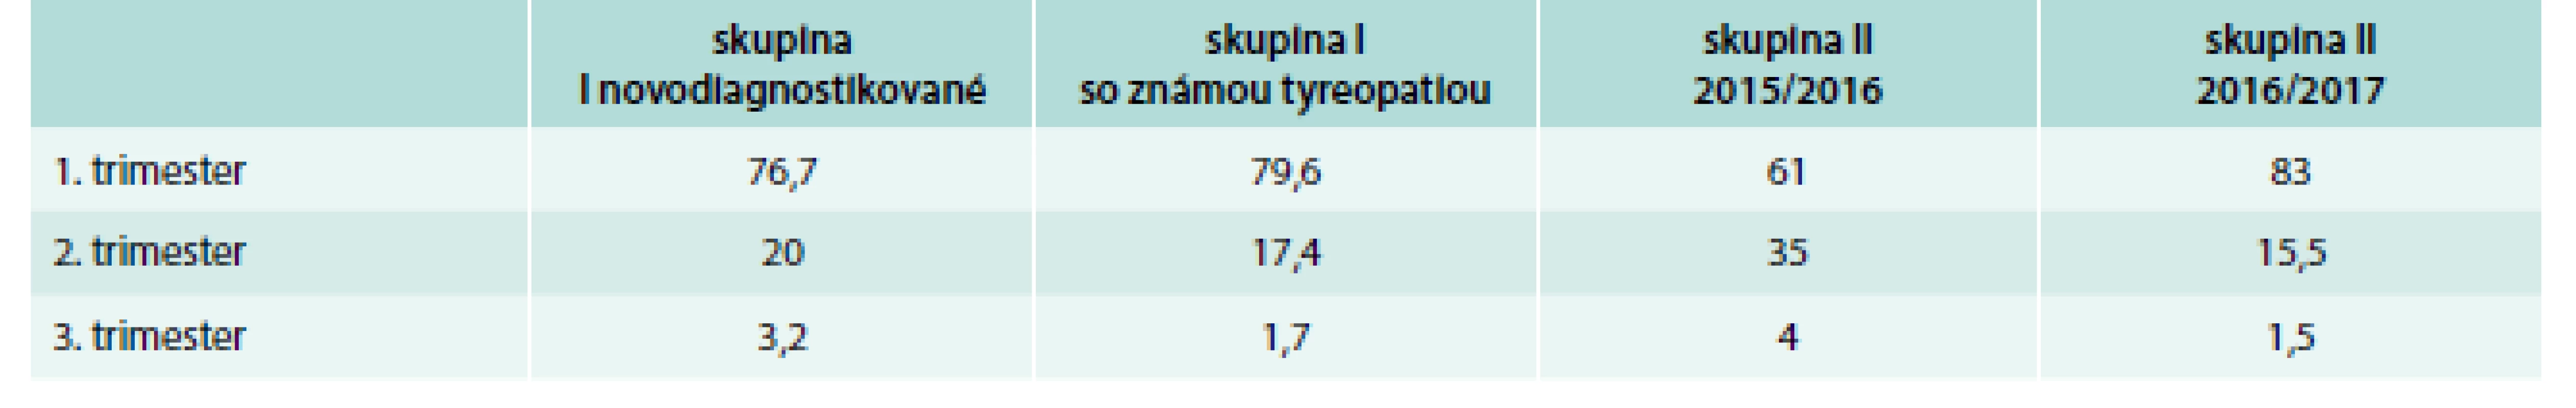 Počet pacientok skrínovaných podľa trimestrov (%)